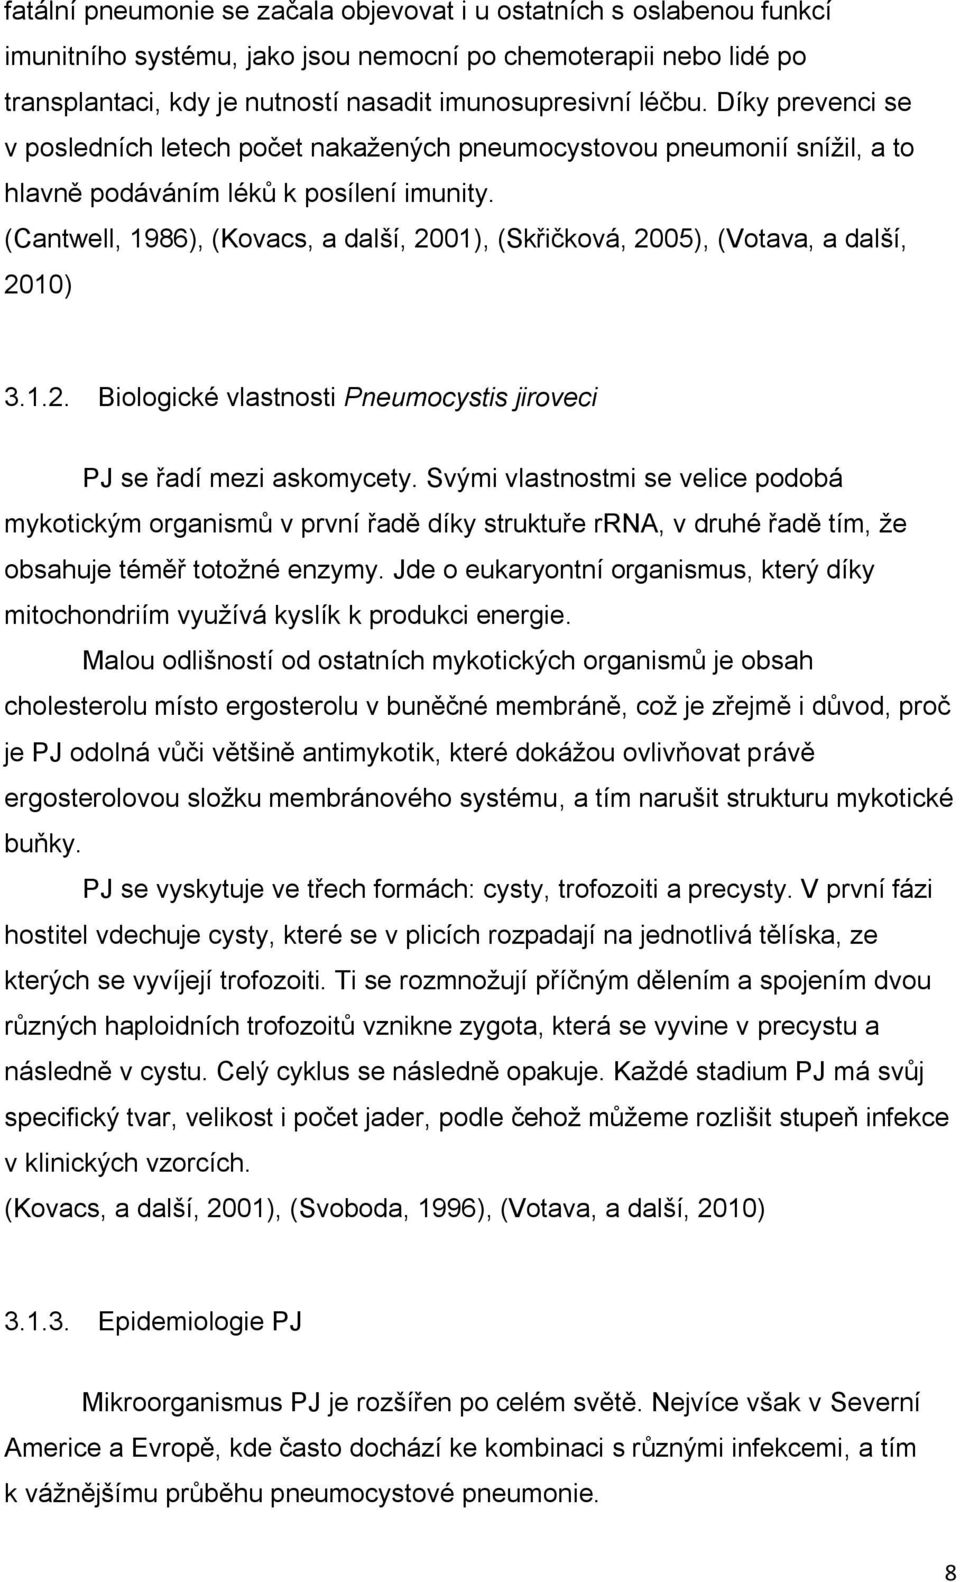 (Cantwell, 1986), (Kovacs, a další, 2001), (Skřičková, 2005), (Votava, a další, 2010) 3.1.2. Biologické vlastnosti Pneumocystis jiroveci PJ se řadí mezi askomycety.